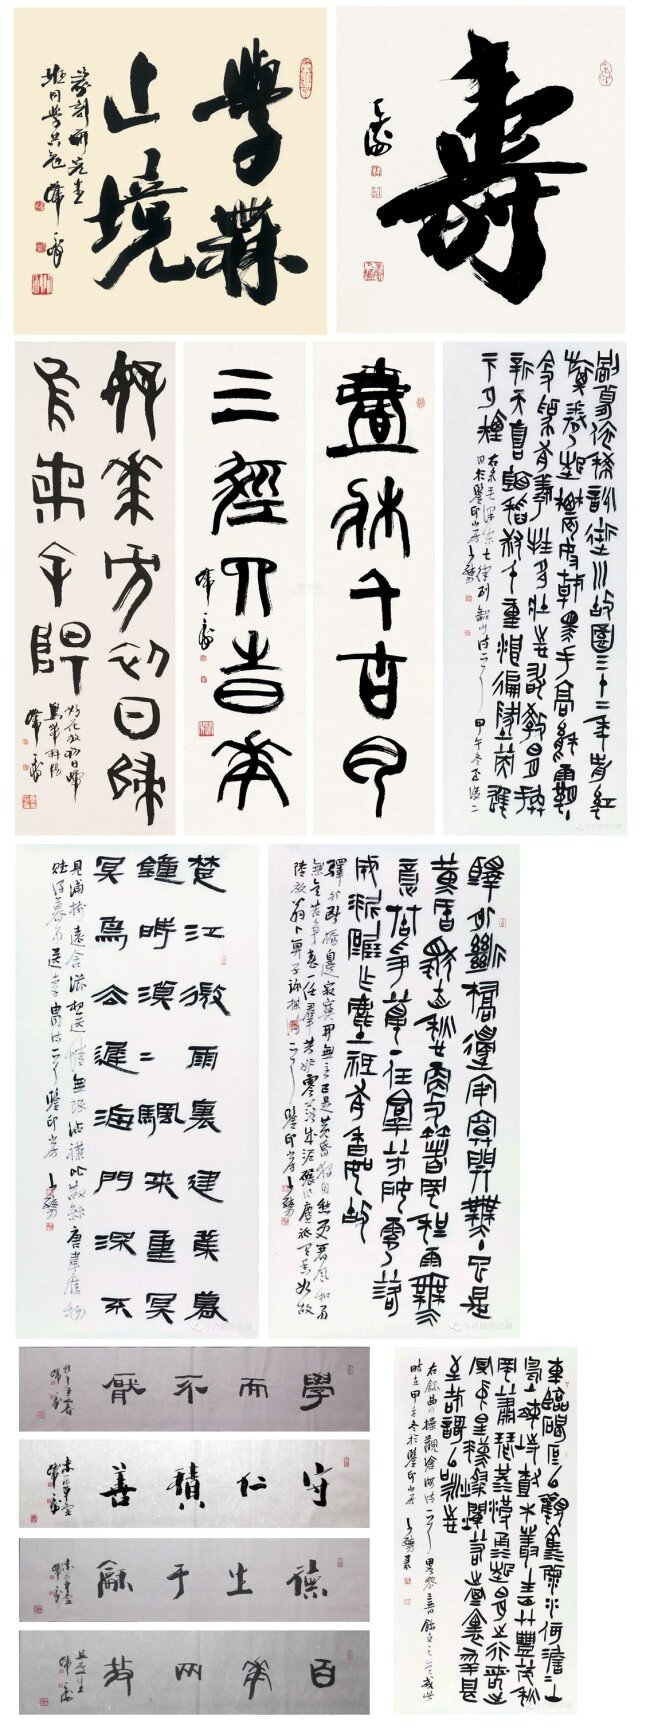 韩天衡 书法 大图 欣赏 国画 国粹 字体 毛笔 中国 文字 白色